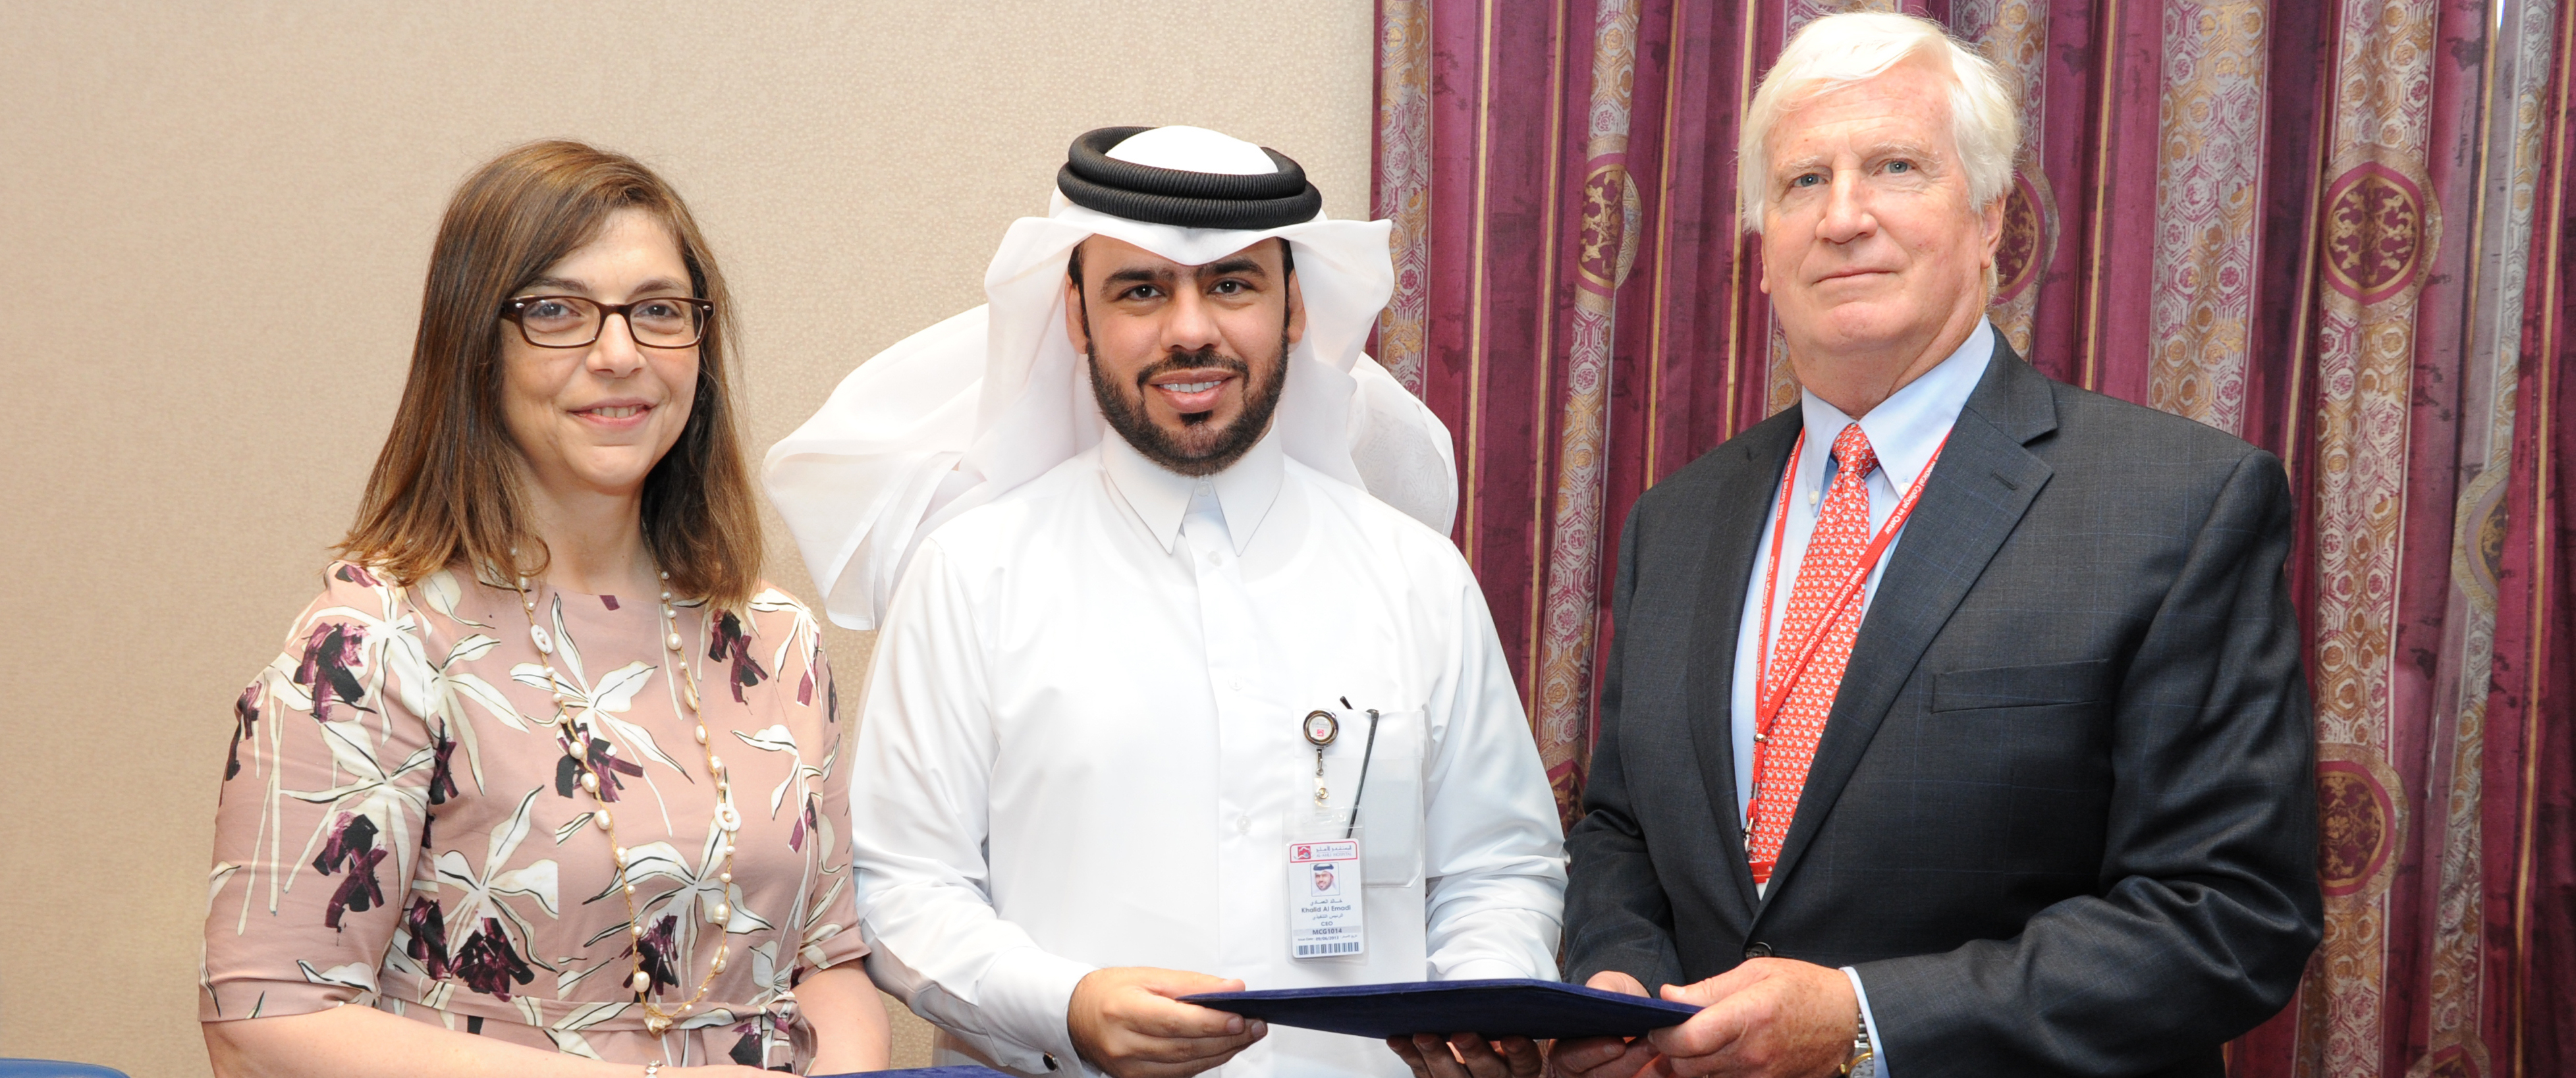 Dr. Thurayya Arayssi, Al Ahli CEO Khaled Emadi, and Dr. Robert Crone.